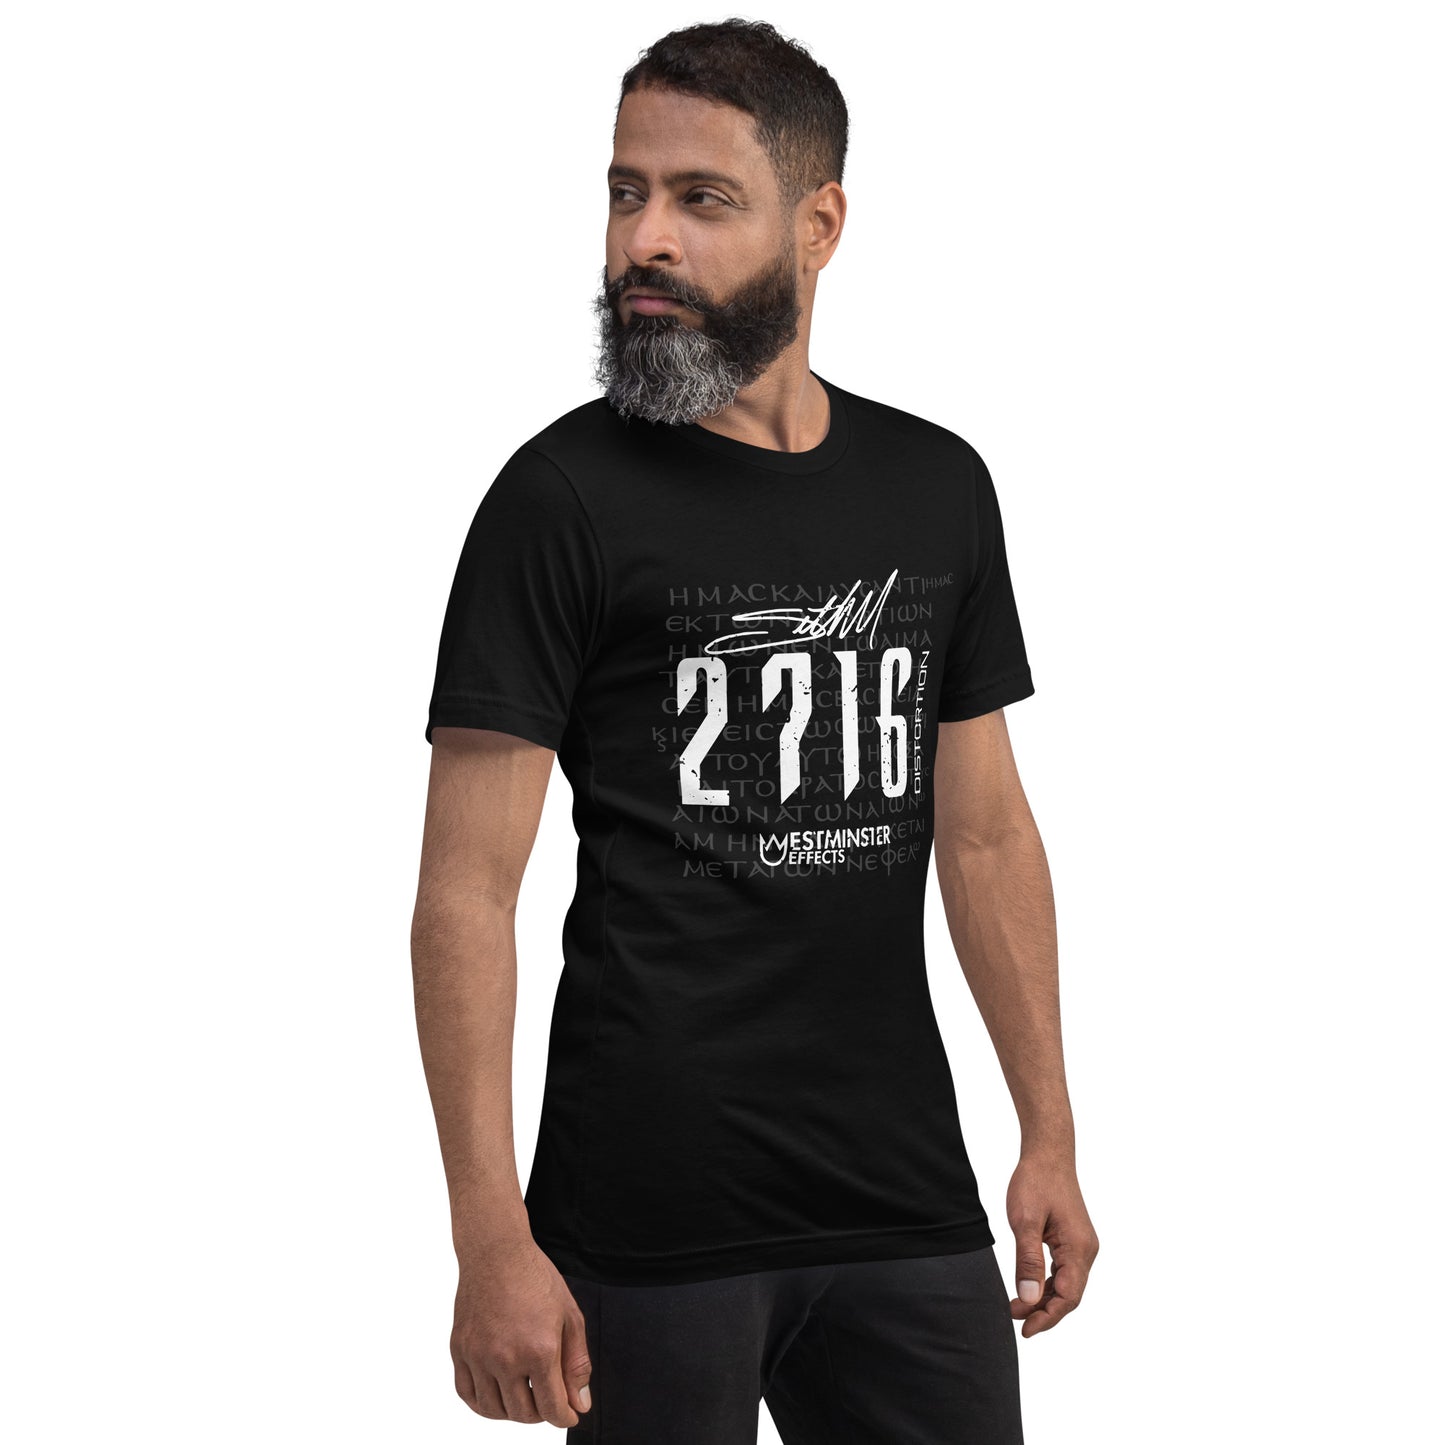 2716 Pedal Art T-shirt